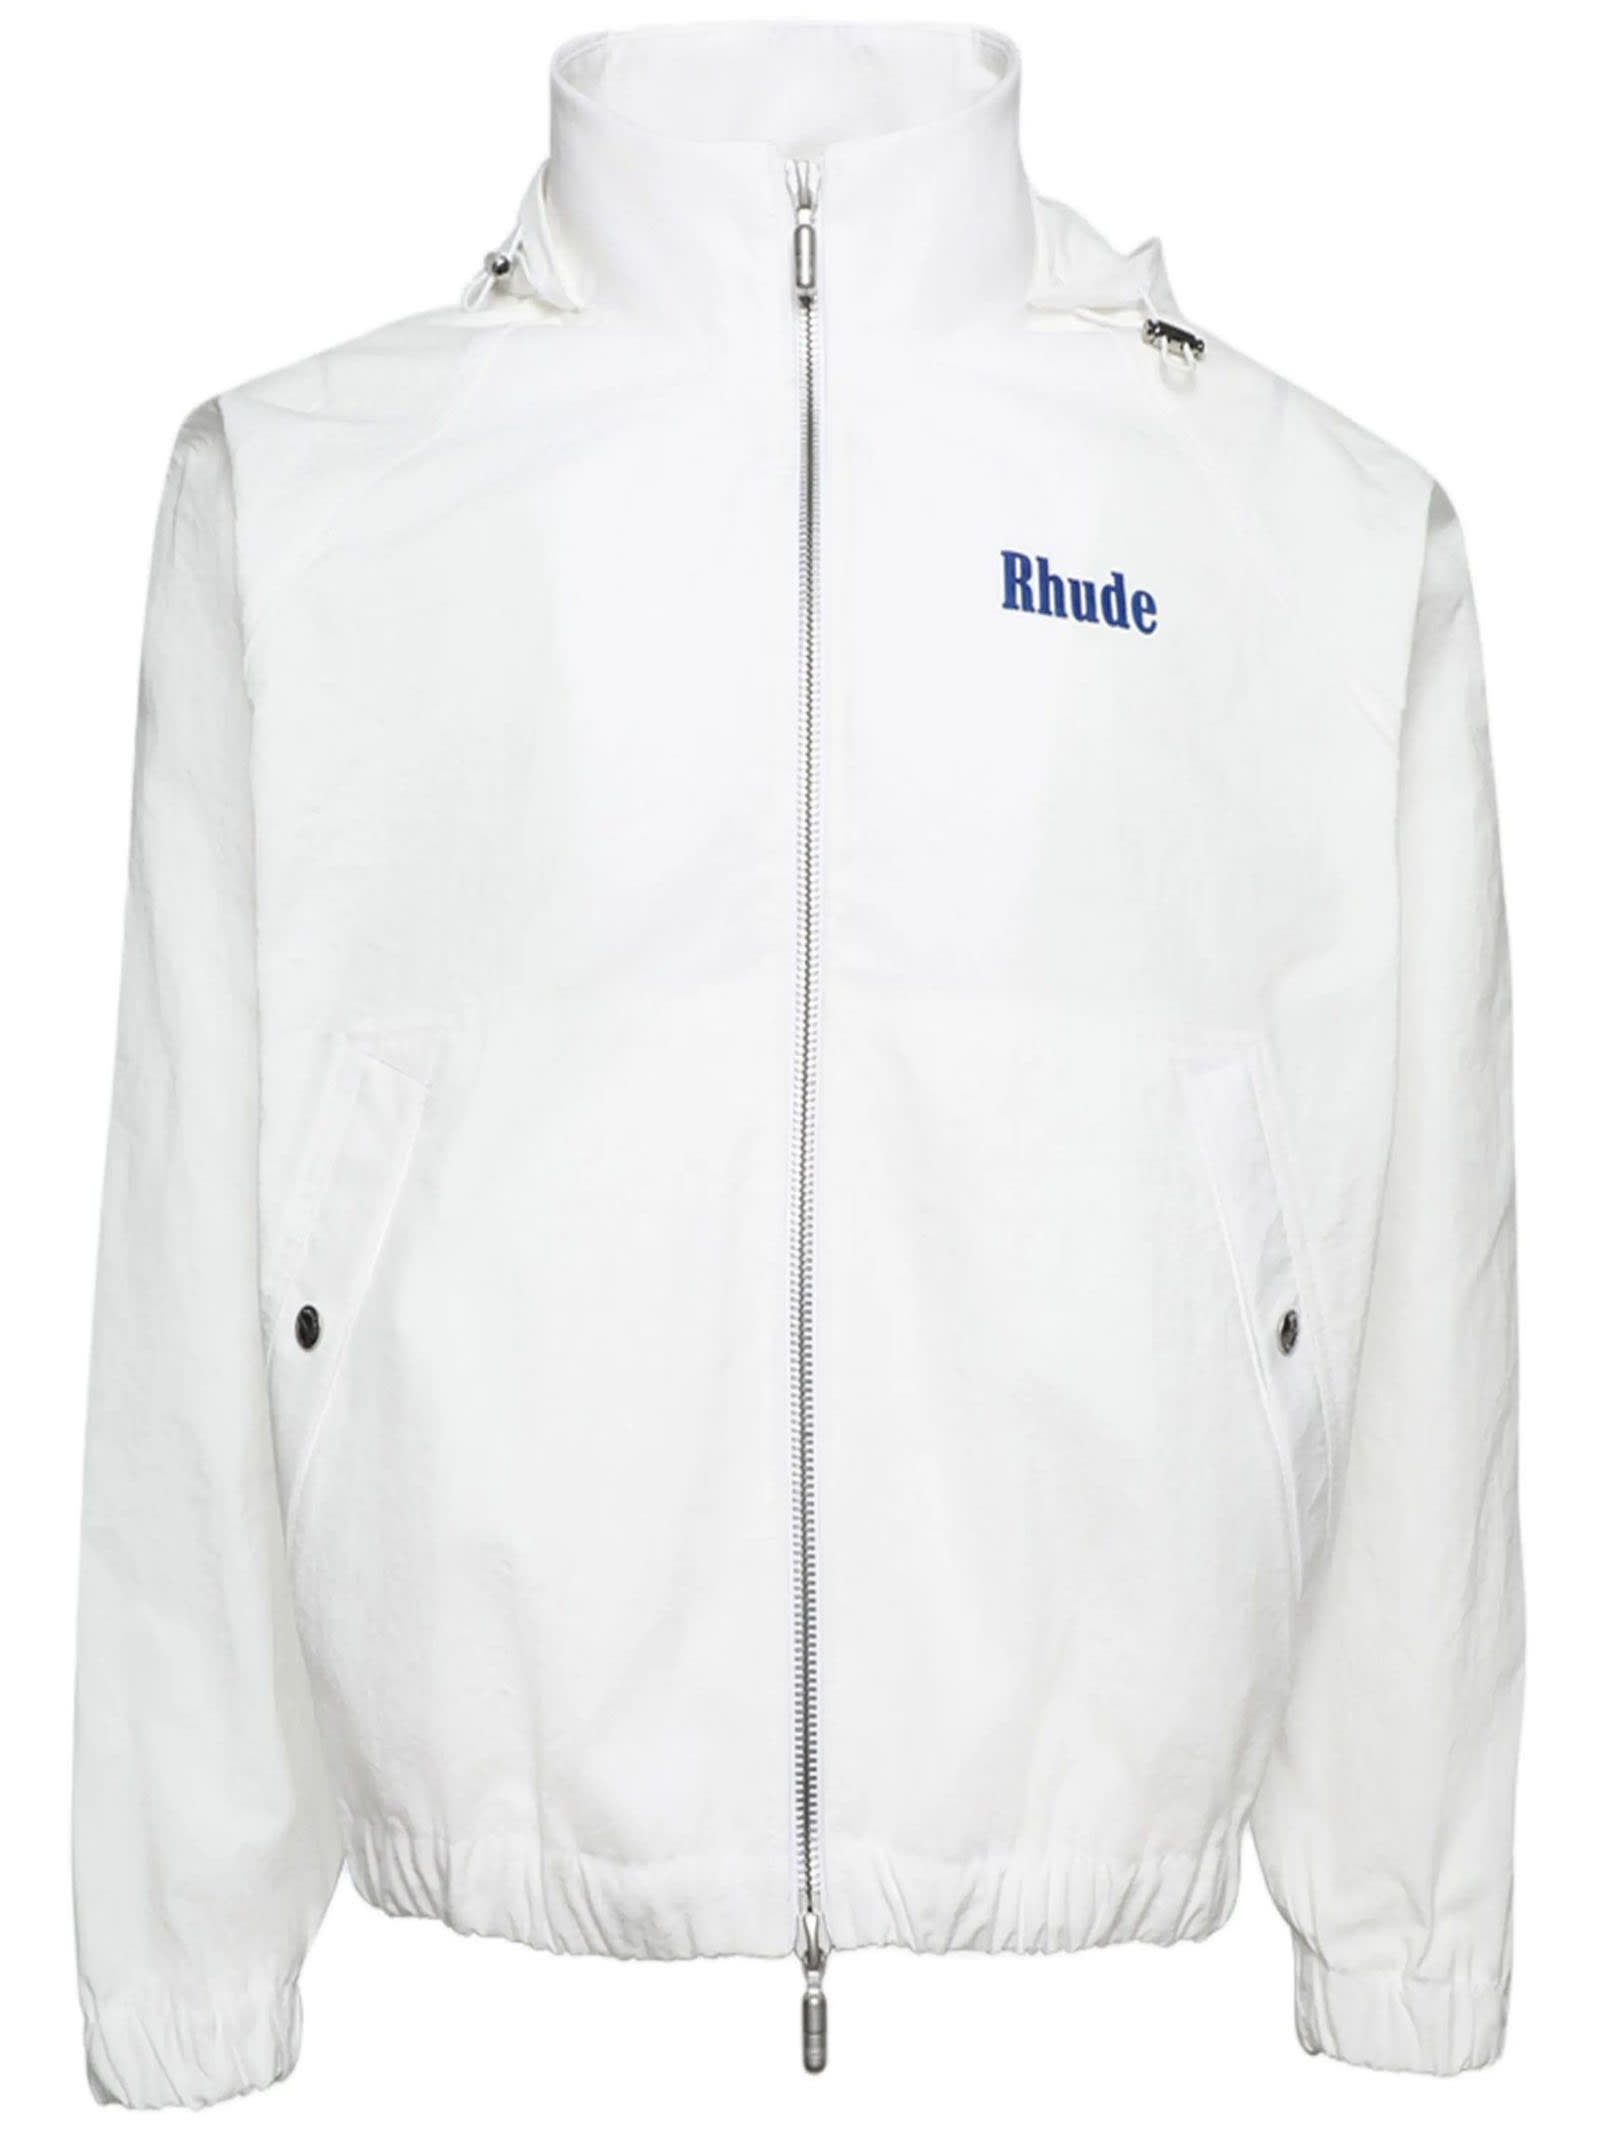 Rhude White Track Jacket